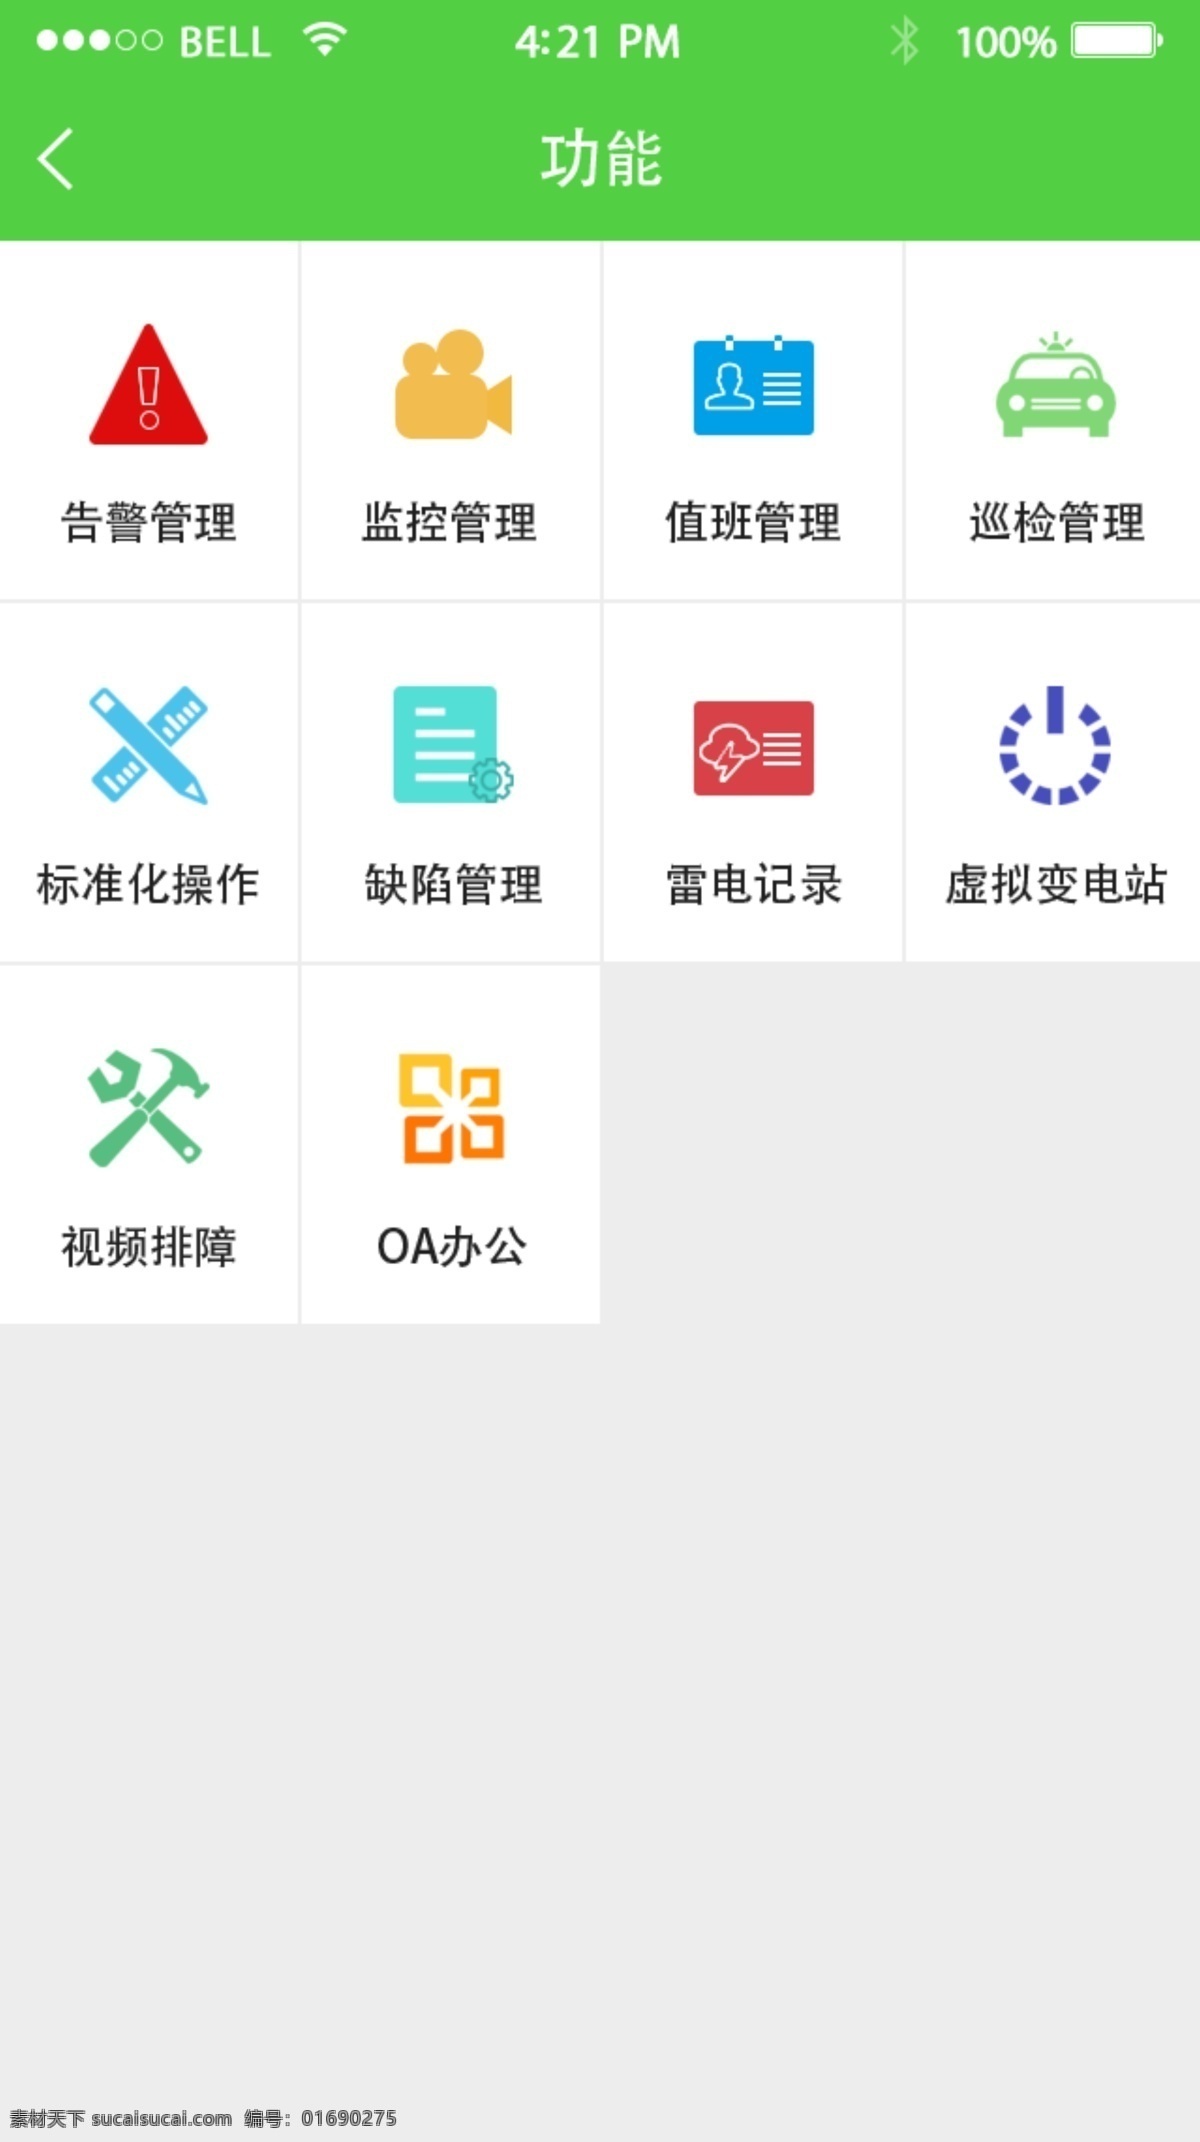 功能图标 icon 图标 手机页面 功能页面 iphone5s 页面 app设计 移动界面设计 图标设计 白色